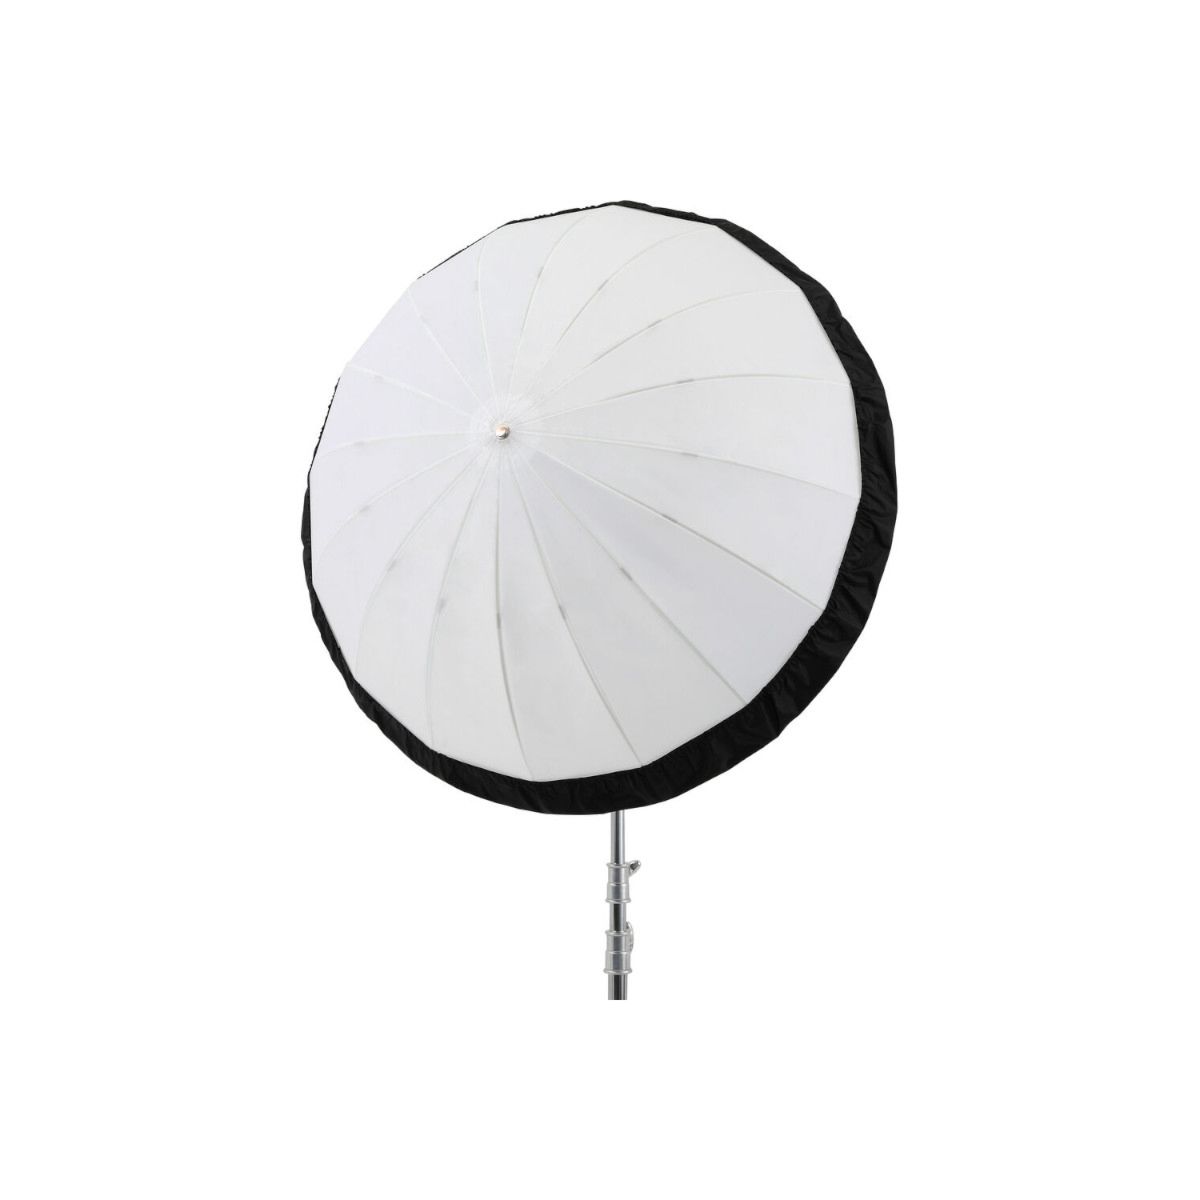 Godox Diffuser DPU 105BS For Parabolic Umbrella UB 105D